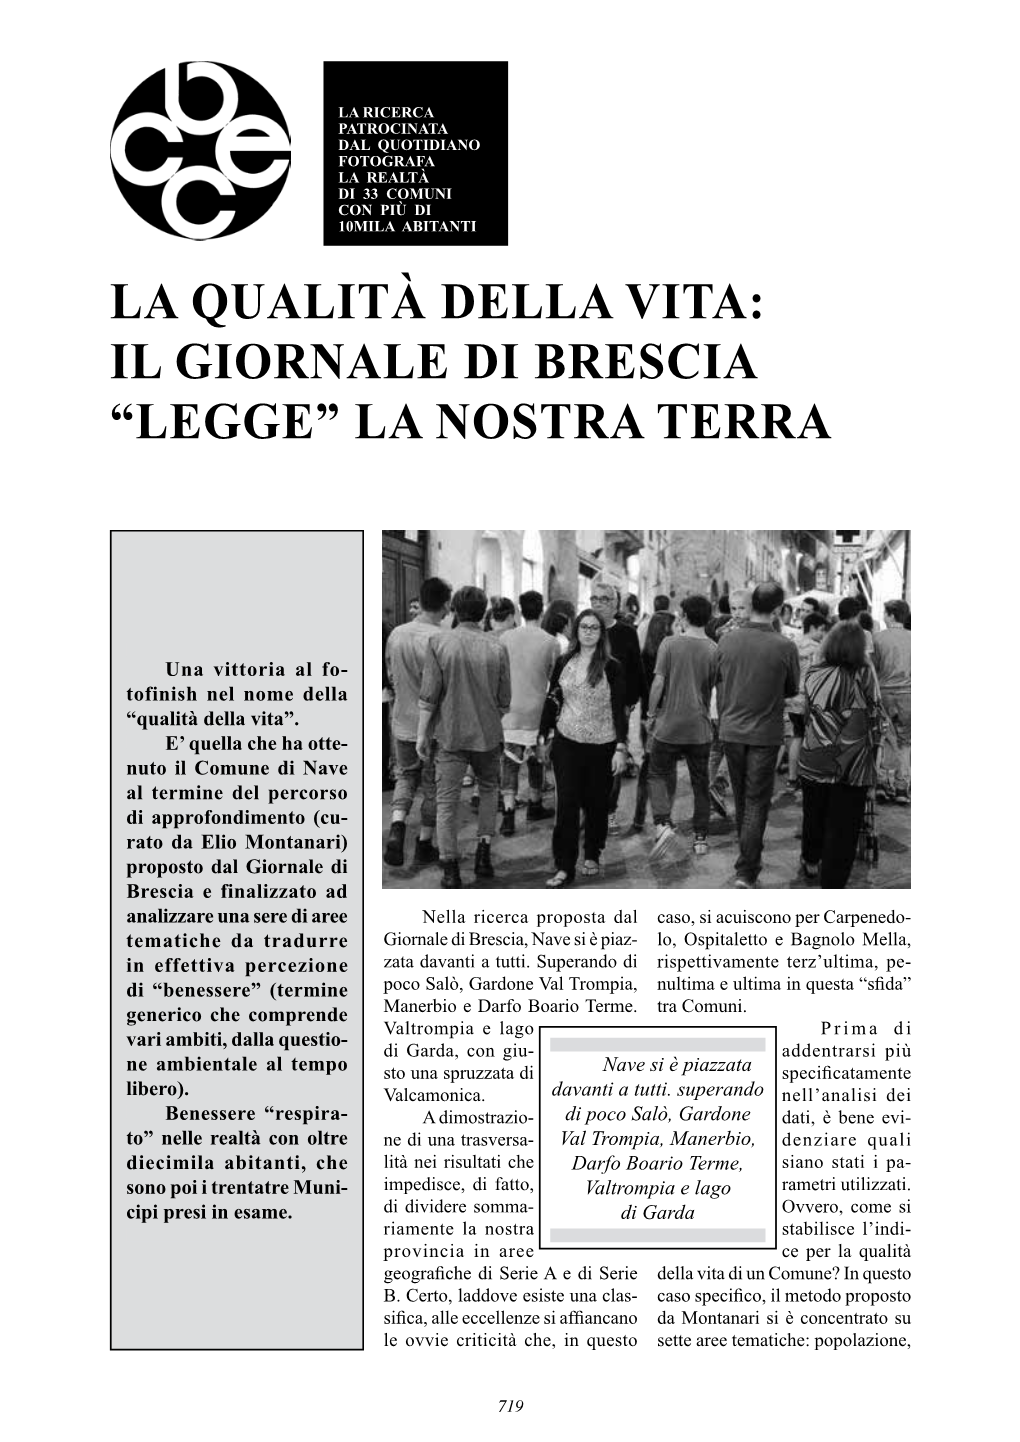 La Qualità Della Vita: Il Giornale Di Brescia “Legge” La Nostra Terra